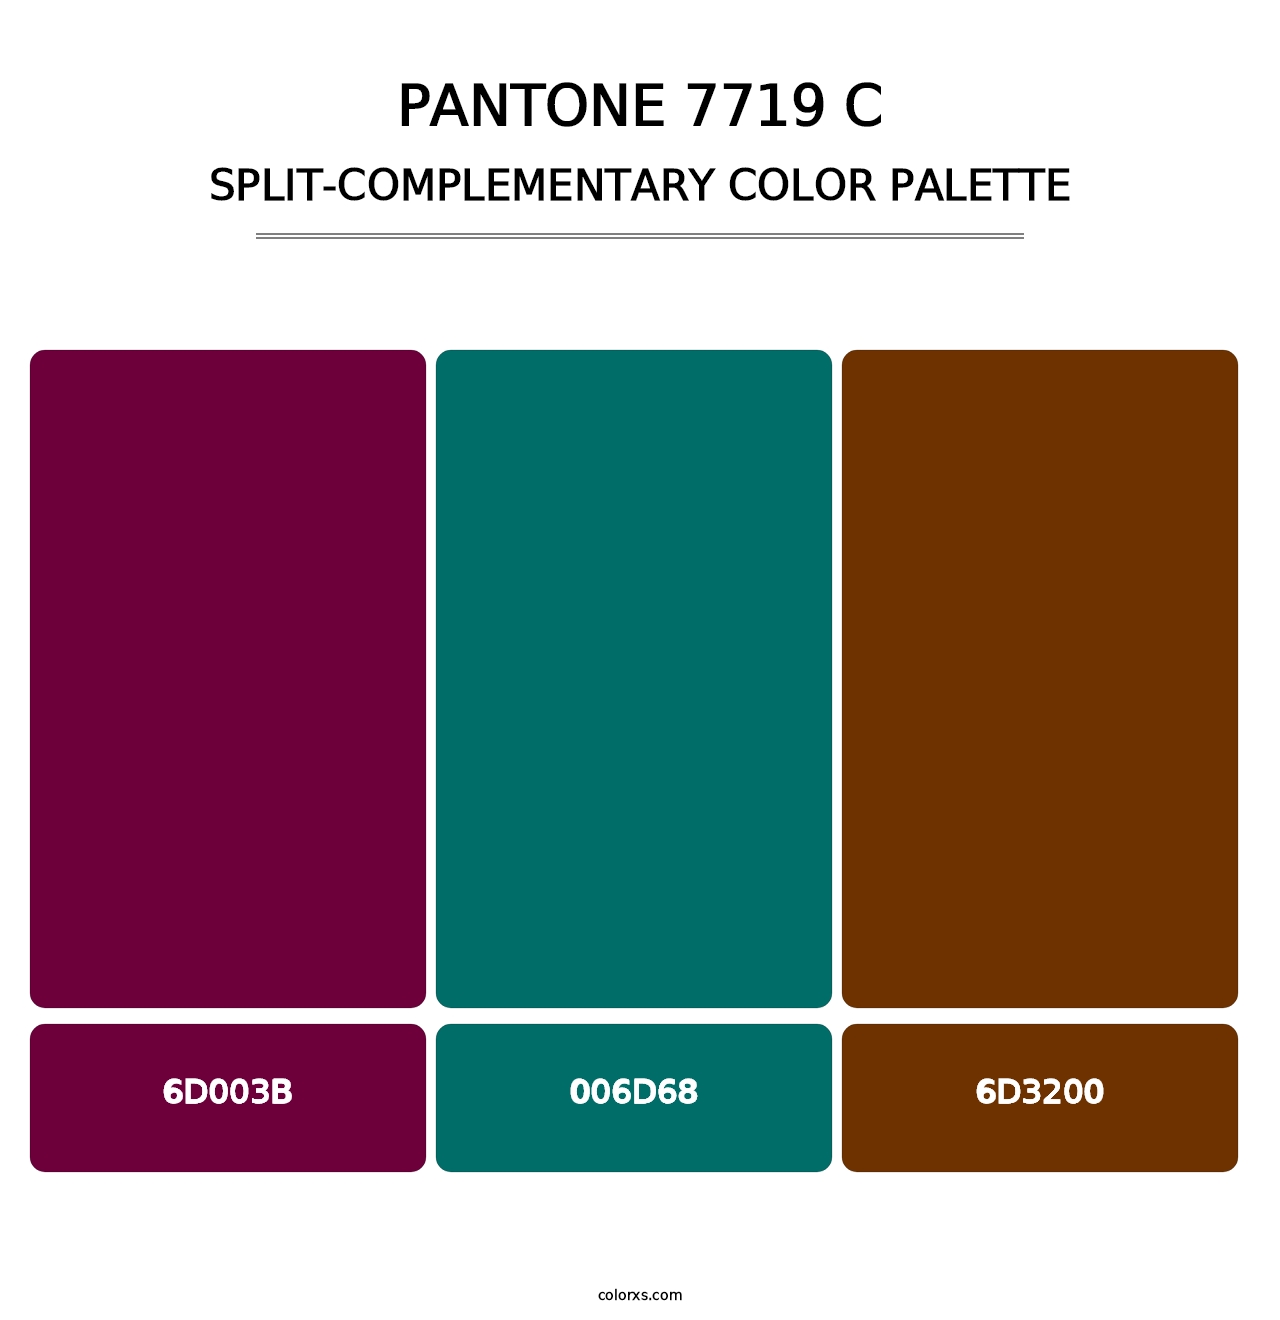 PANTONE 7719 C - Split-Complementary Color Palette